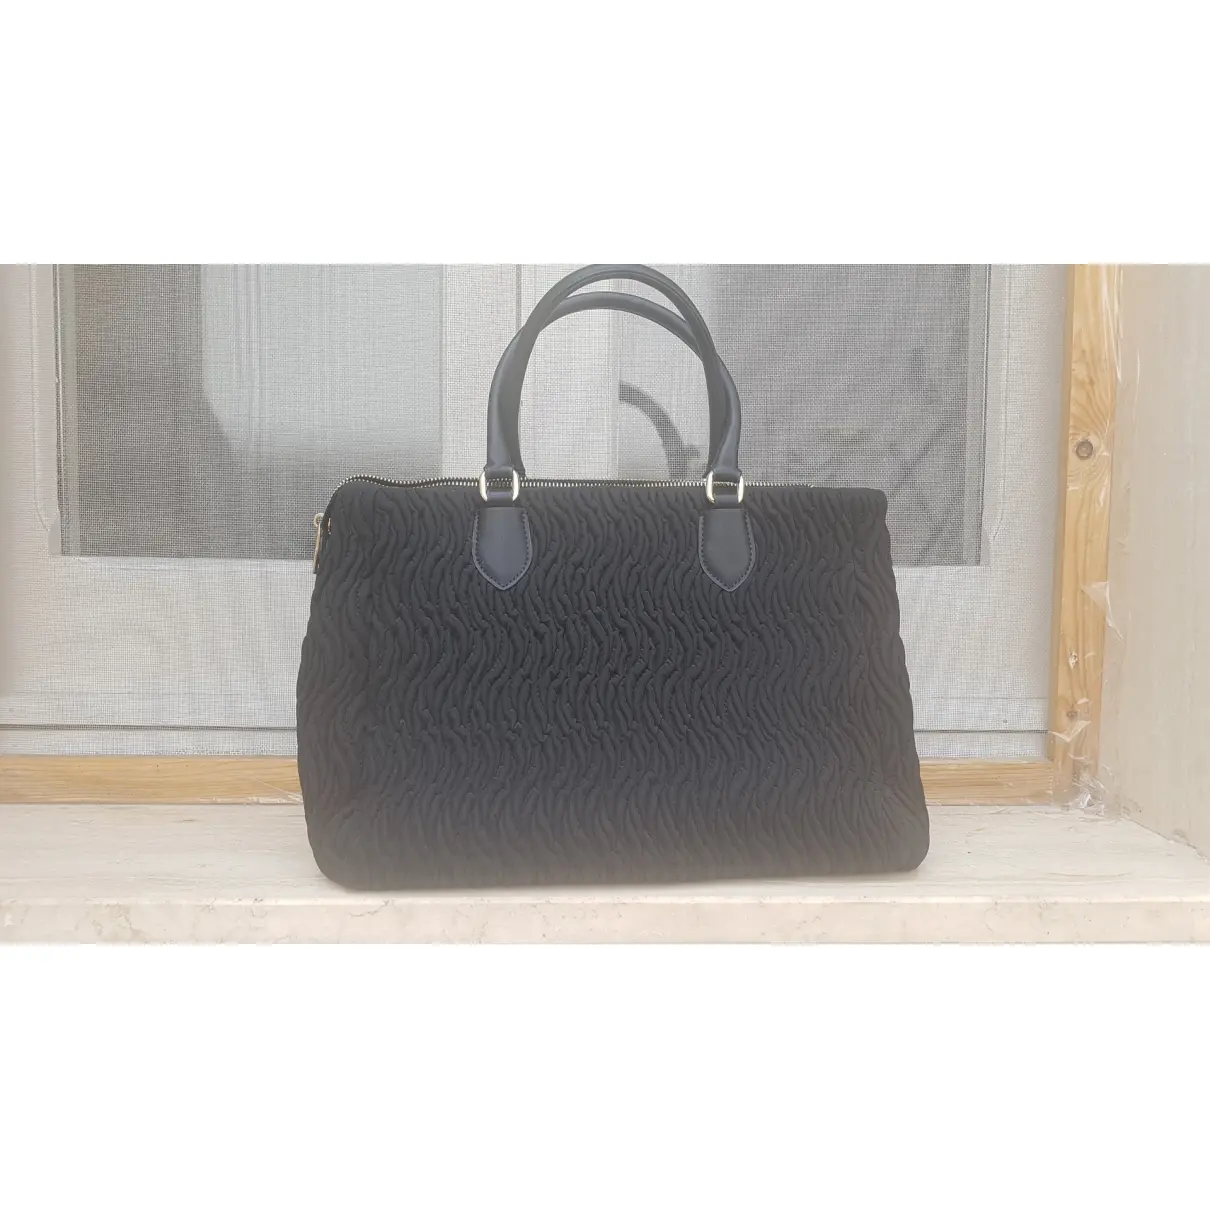 Buy GATTINONI Handbag online